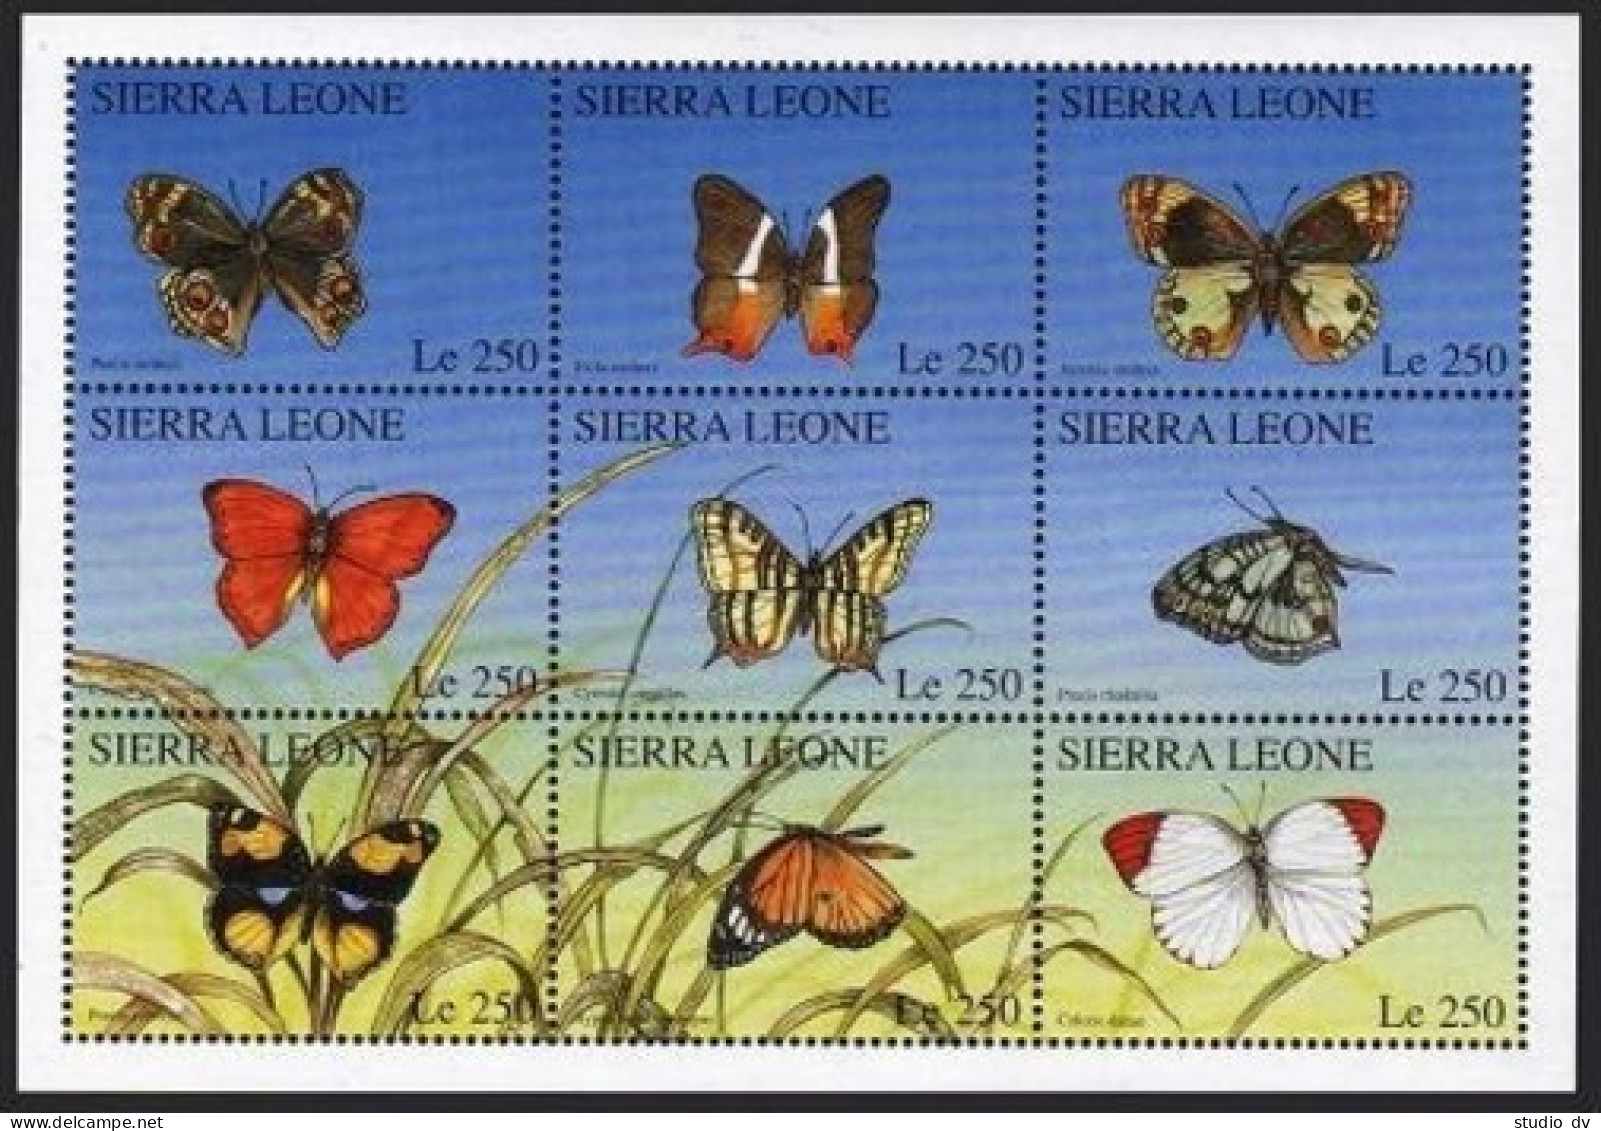 Sierra Leone 1910 Ai Sheet, MNH. Butterflies 1996. - Sierra Leone (1961-...)